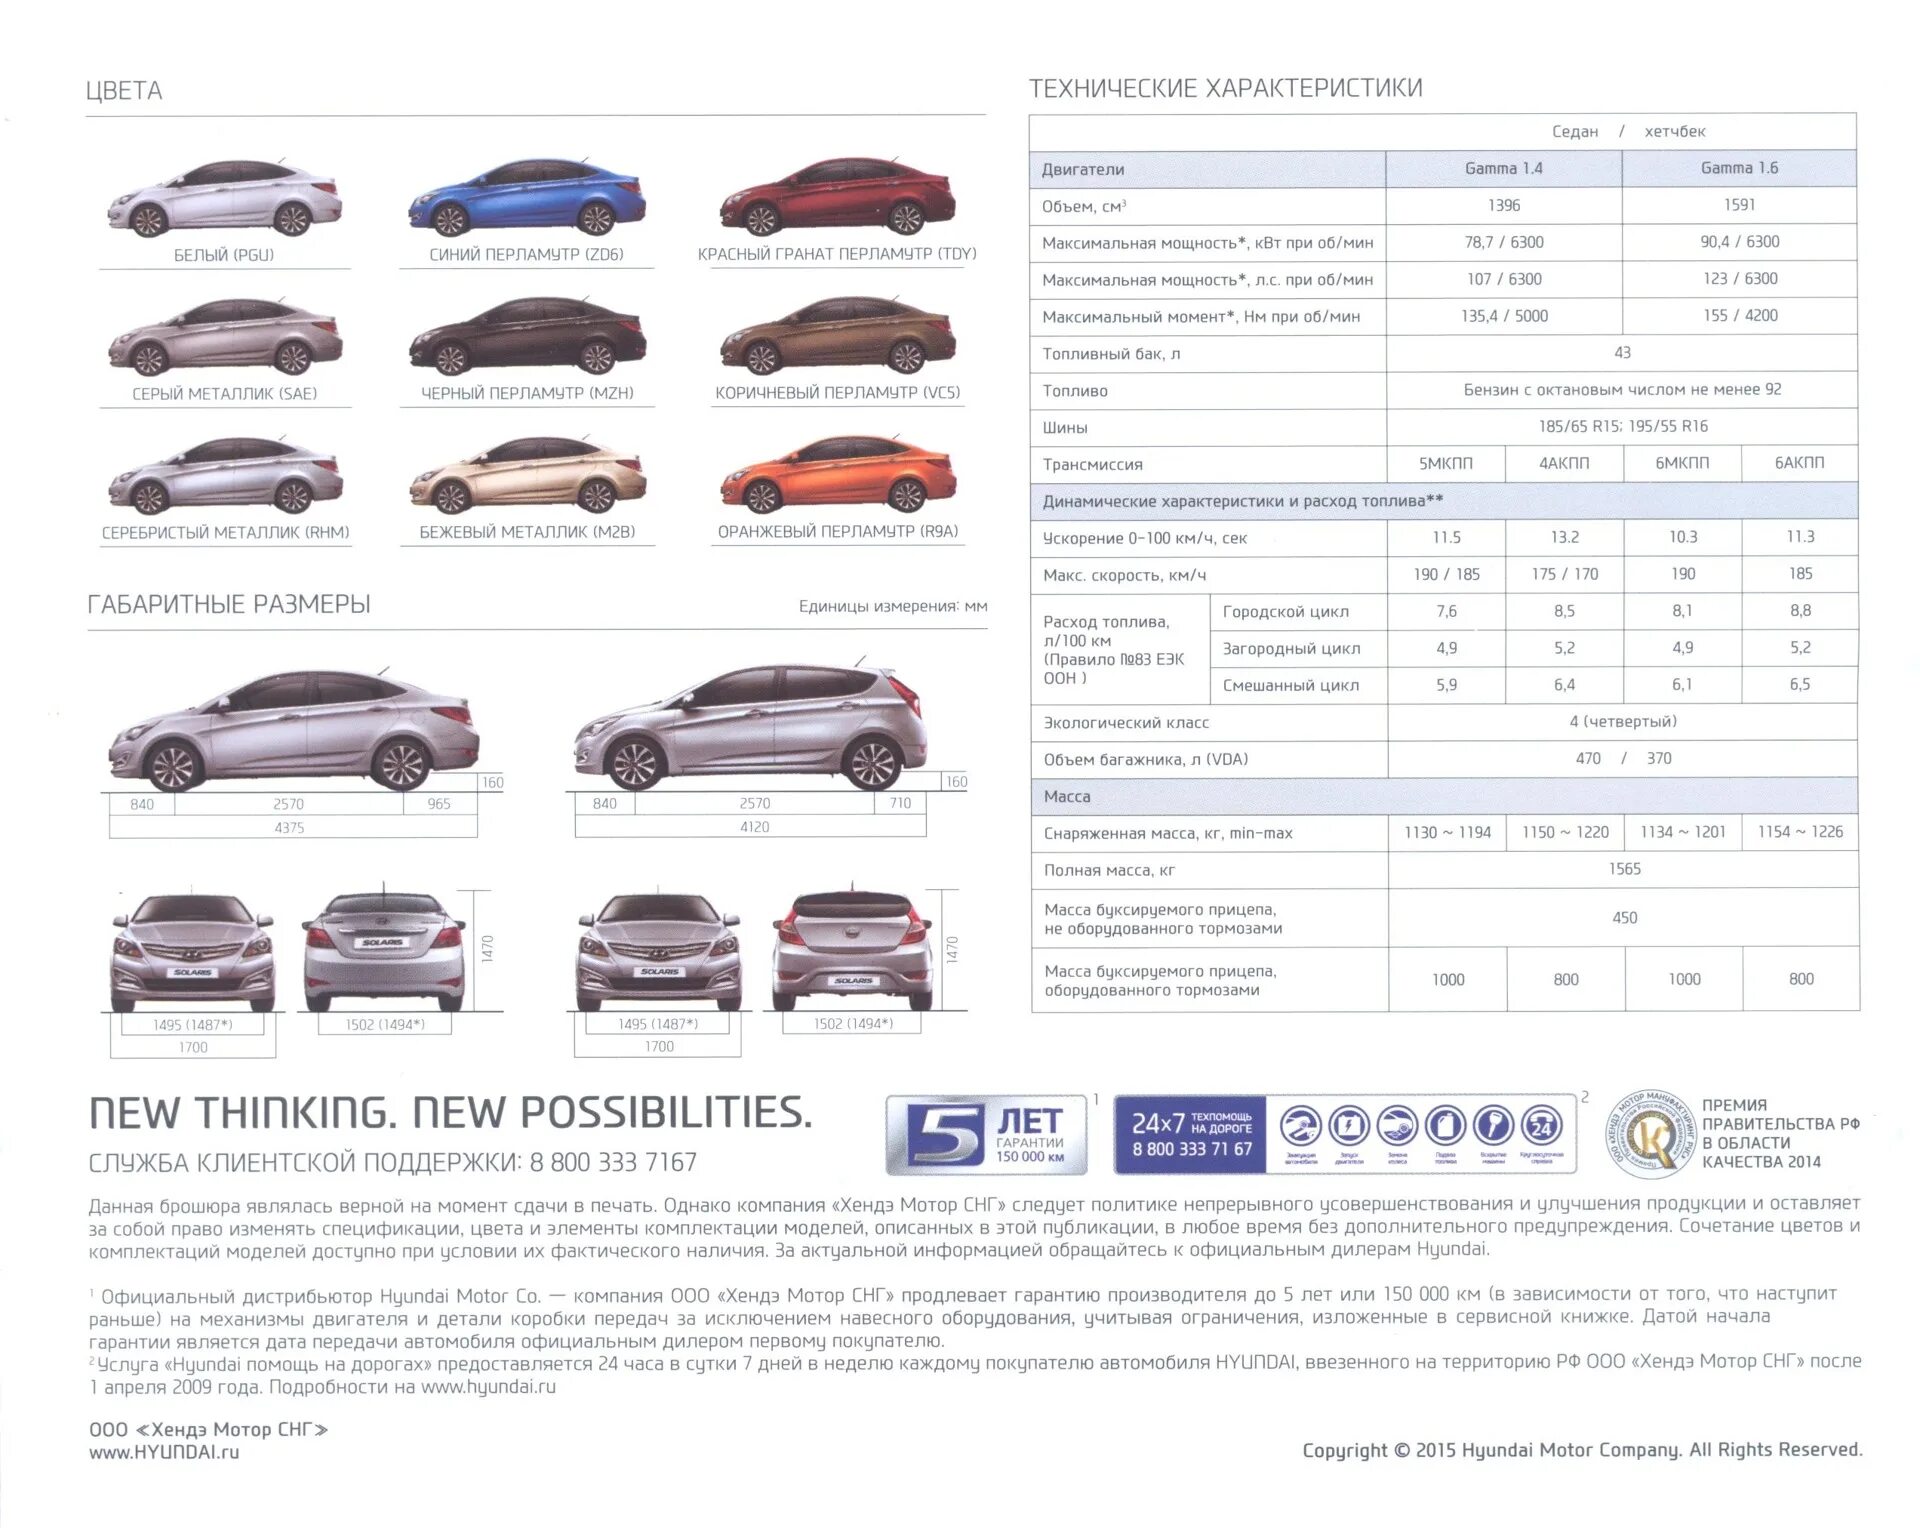 ТТХ Hyundai Solaris 2015 года. Хендай Солярис 2015 седан характеристики. Технические характеристики слоряс 2015. Тех характеристики Хендай Солярис 2015.